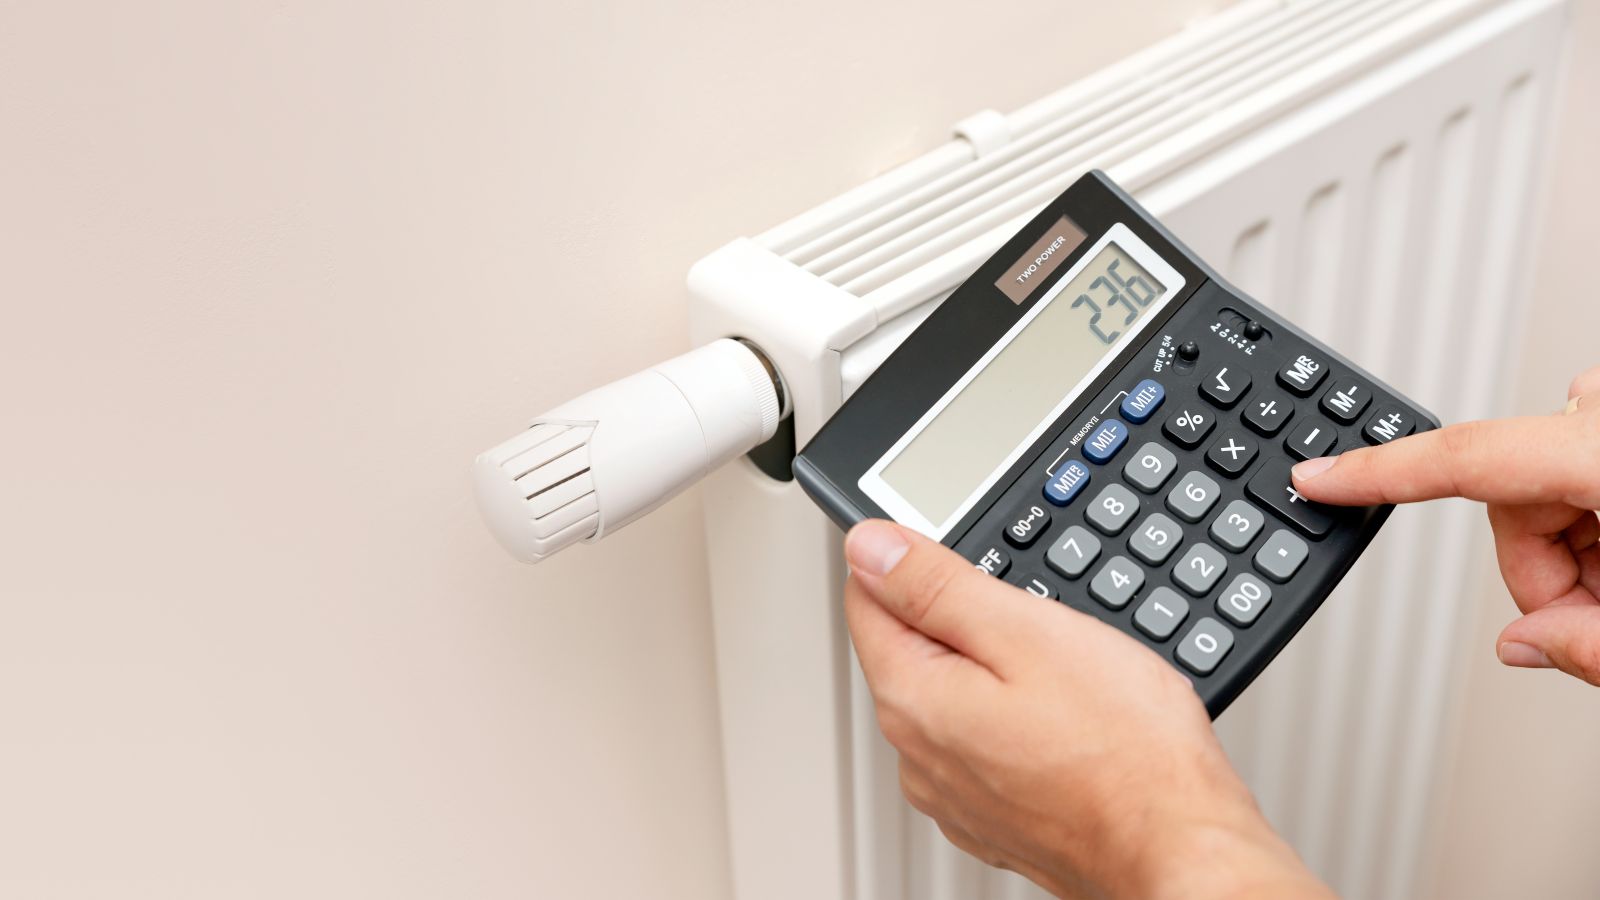 Das Bild zeigt eine Heizung als Symbol für Wärme in Gebäuden und zwei Hände mit Taschenrechner, was die Kalkulation der Heizkosten veranschaulicht.